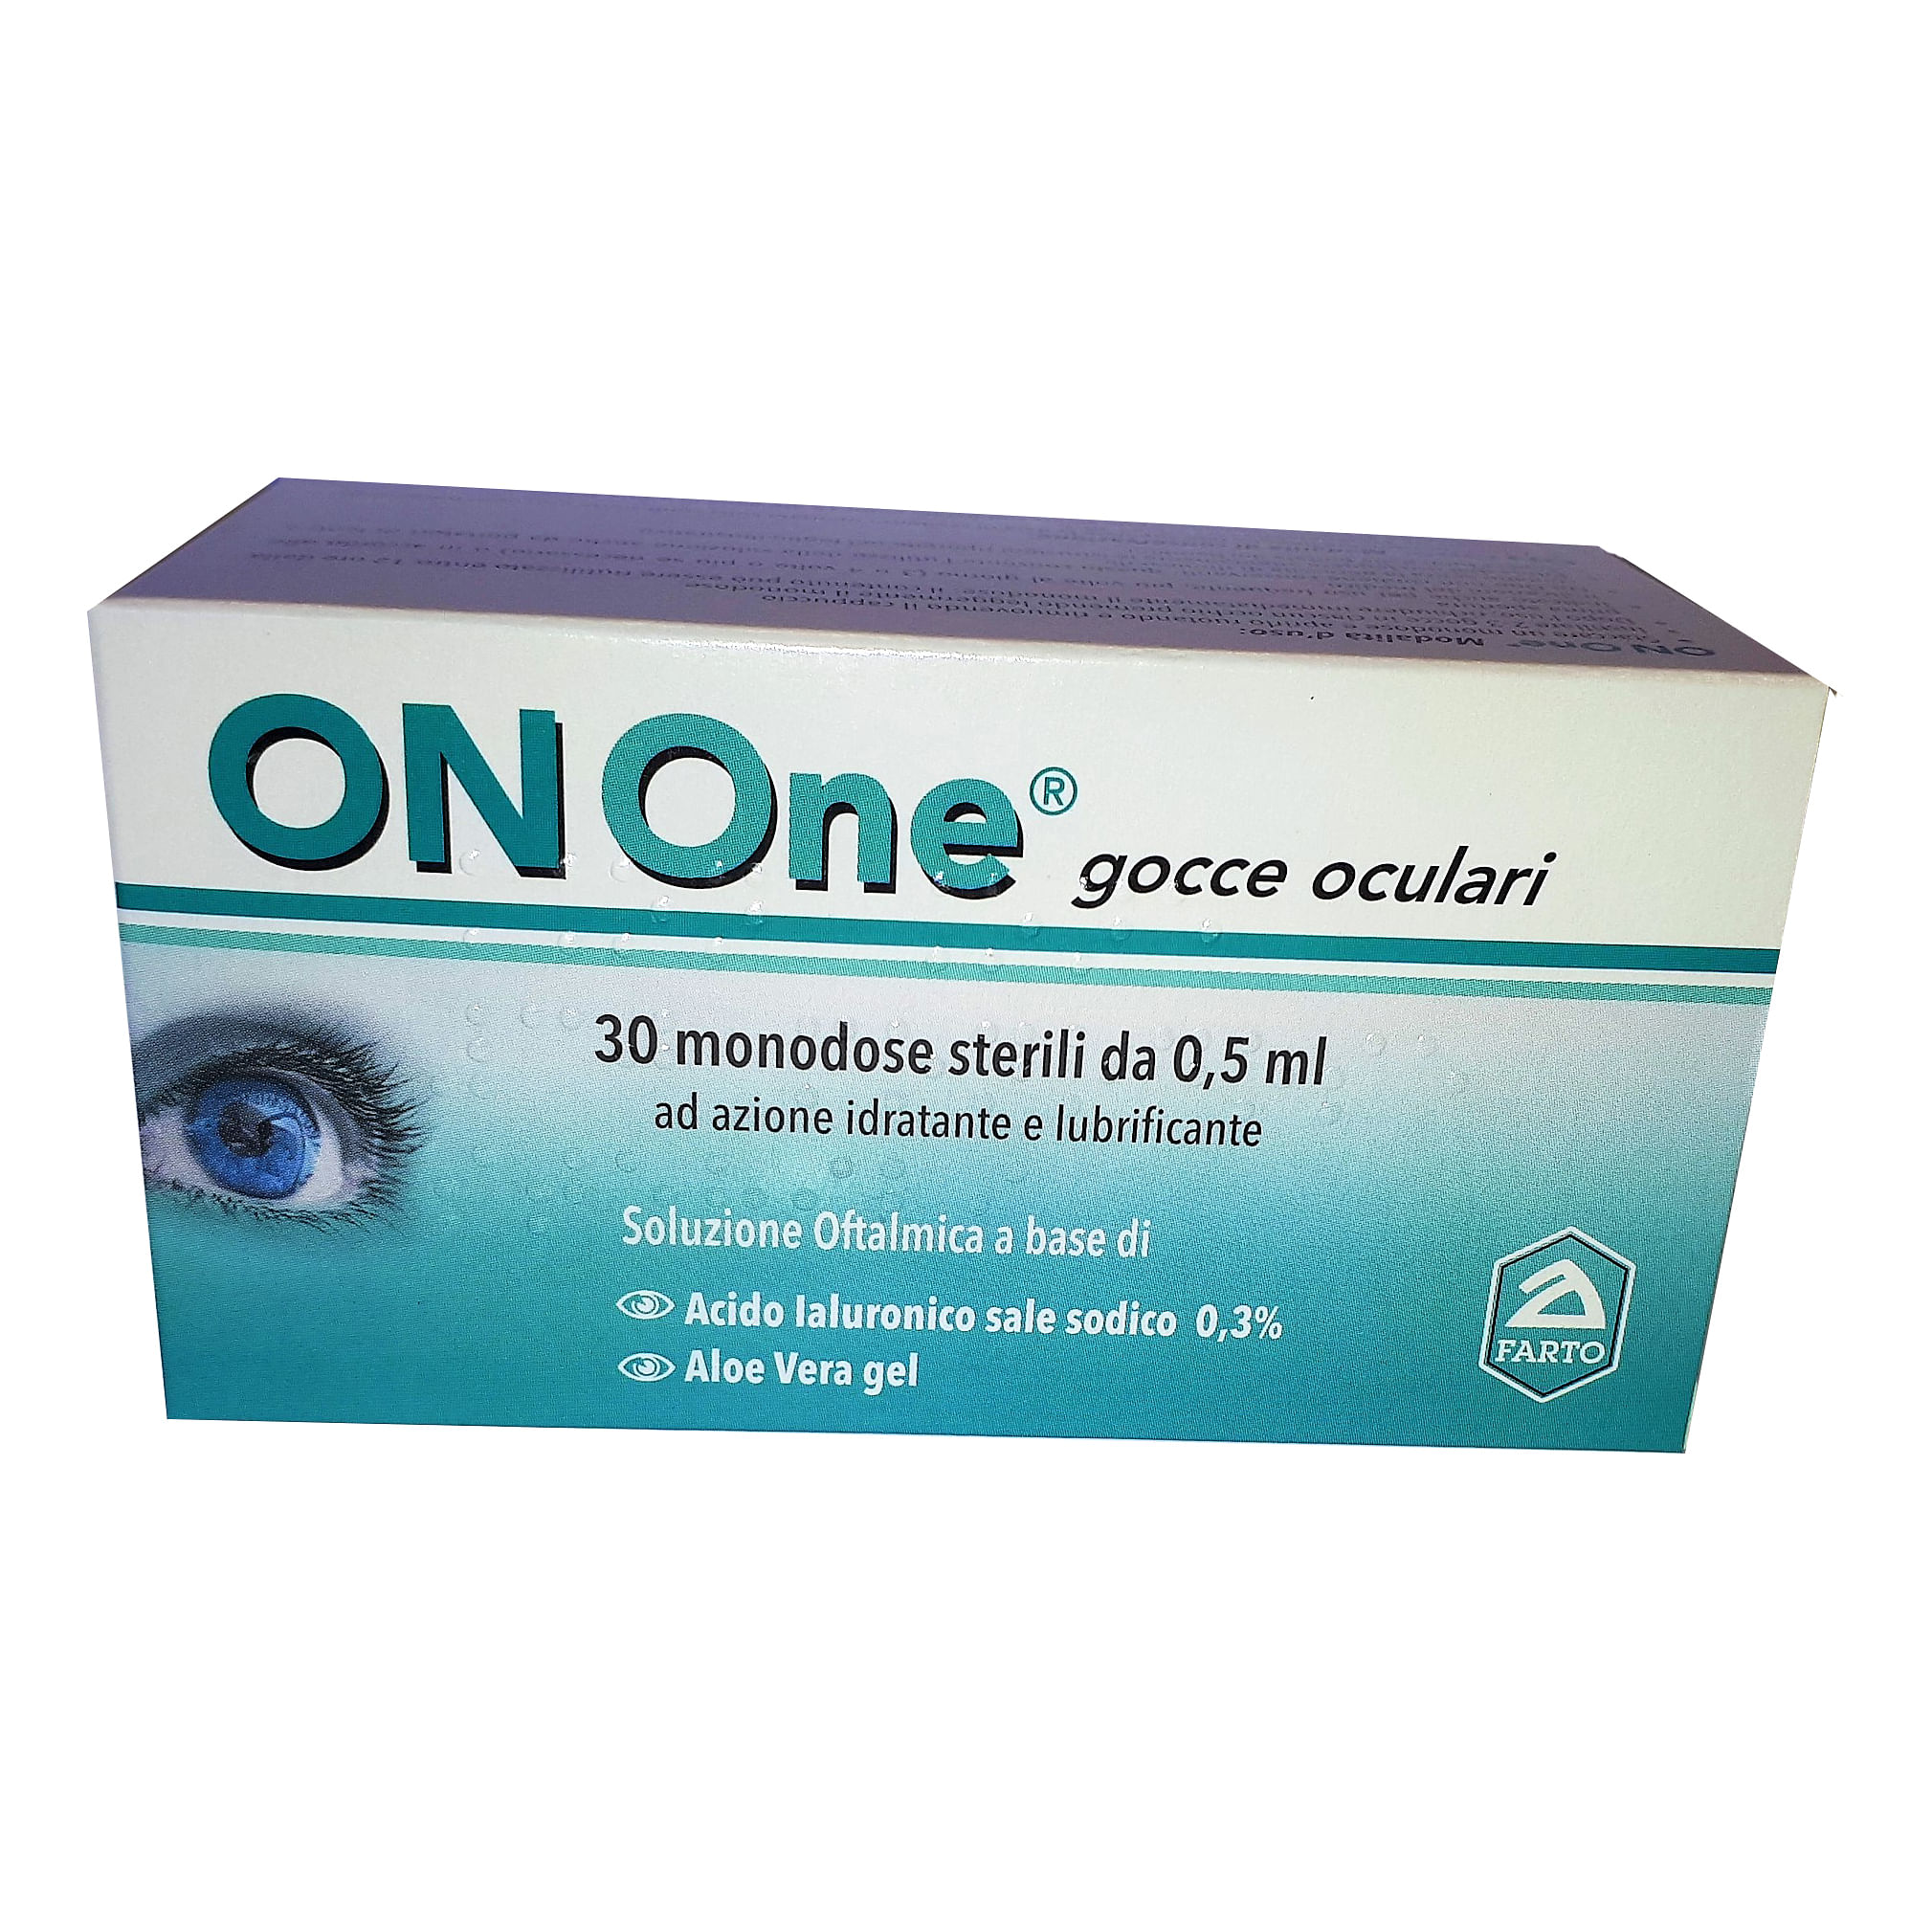 Download Onone 30 monodose sterili da 0,5 ml in 6 strip: Acquista ...